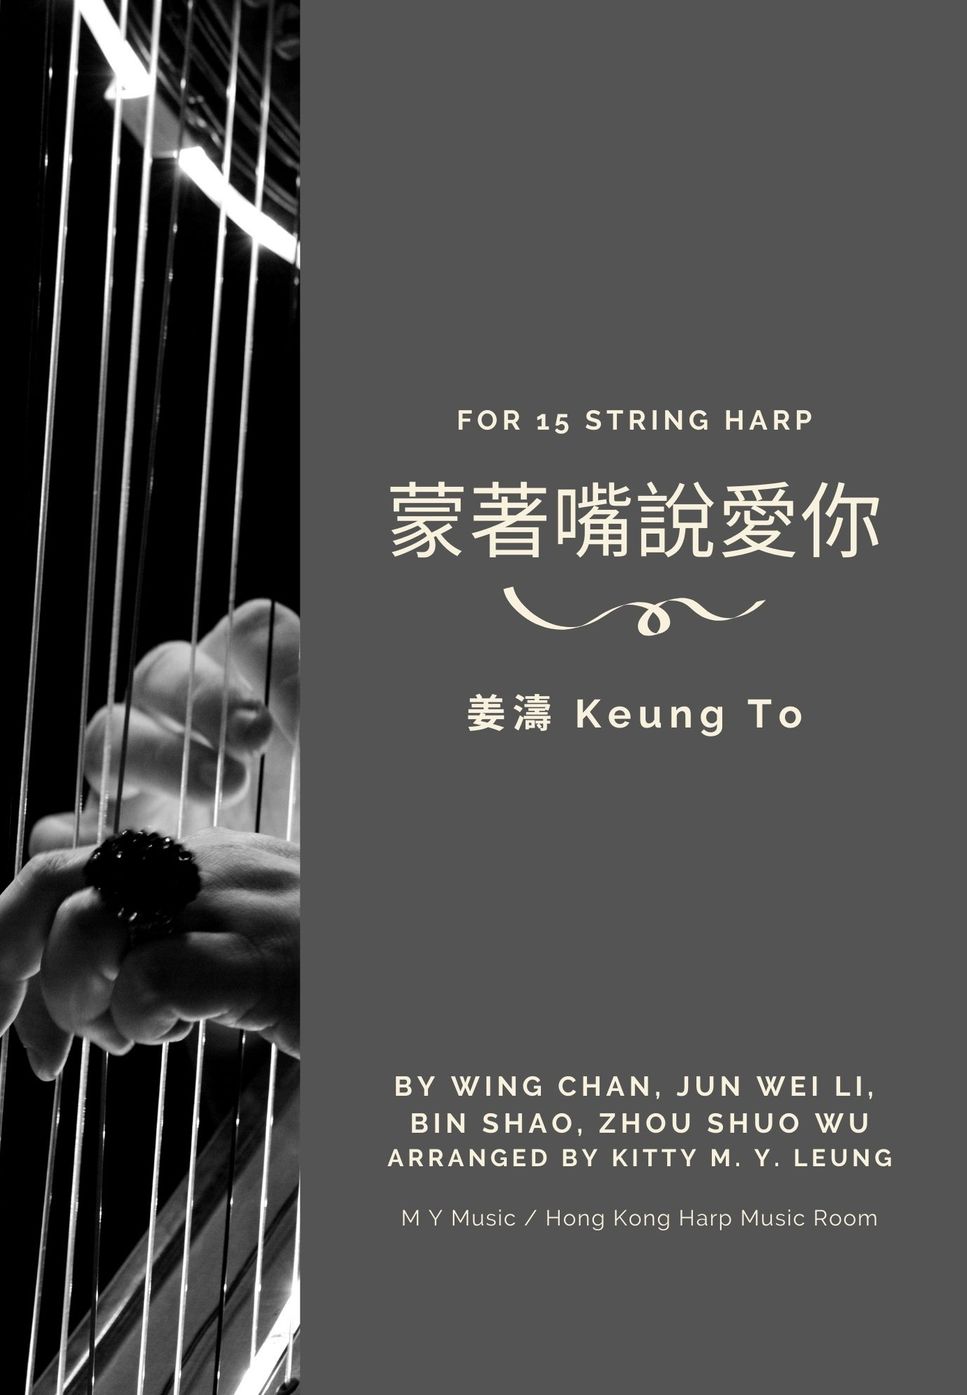 姜濤 - 蒙著嘴說愛你 (15弦小豎琴) by Kitty M. Y. Leung